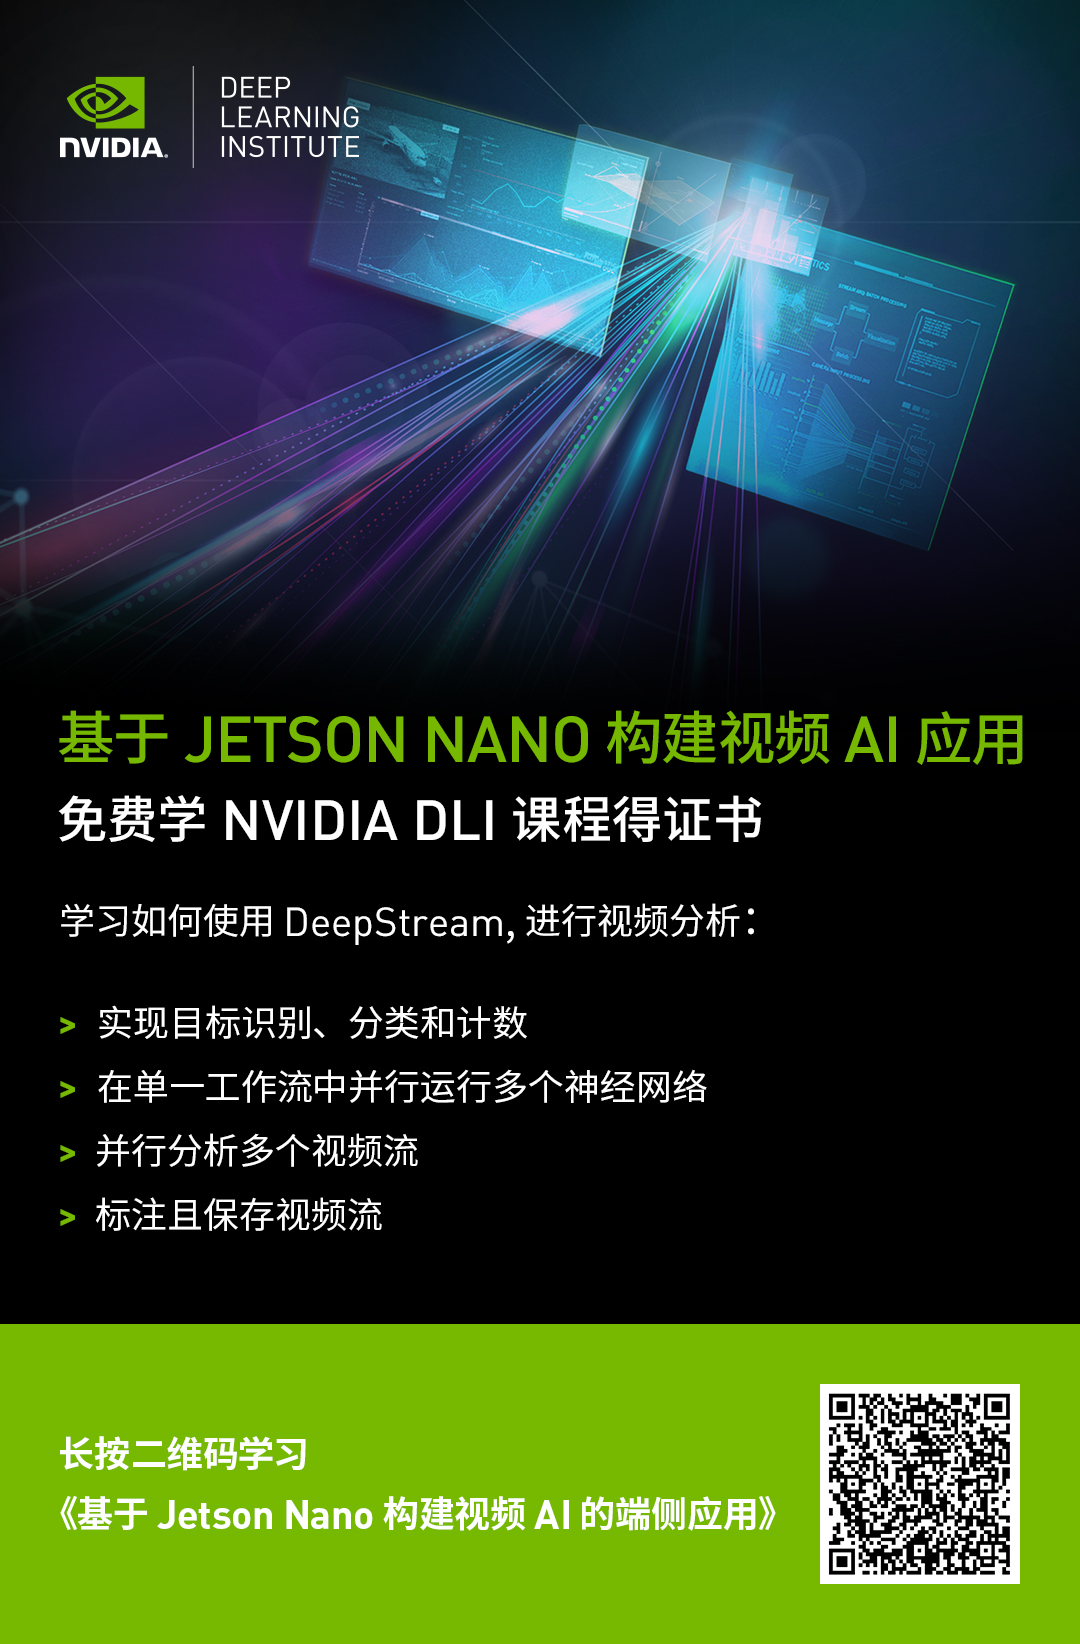 nvidia-deepstream6.0-webinar-wechat-poster-1080x1626-zhCN-2164270.jpg